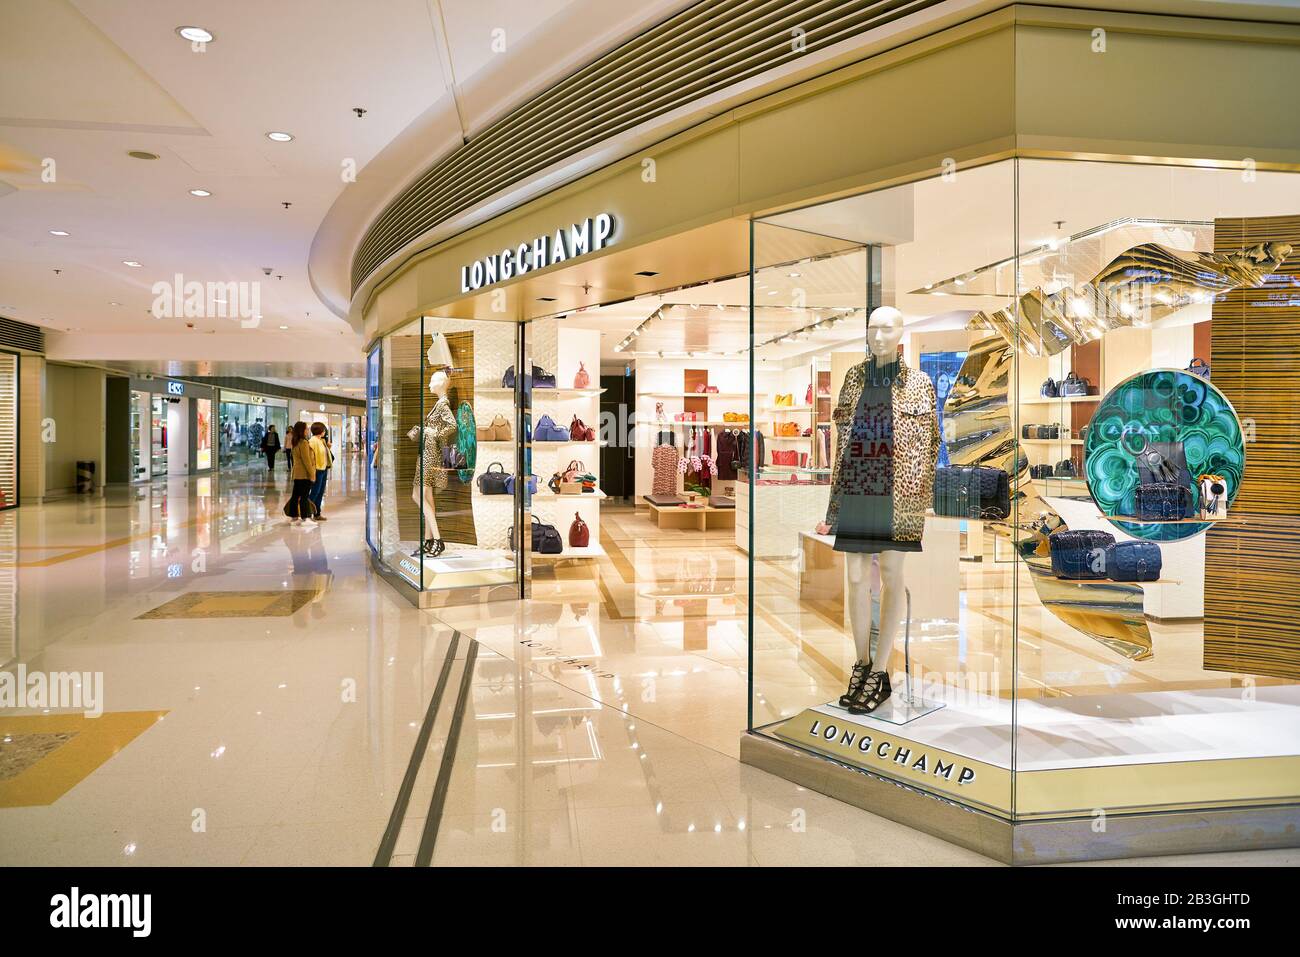 HONG KONG, CHINA - CIRCA JANUARY, 2019: shopfront of Longchamp store in ...